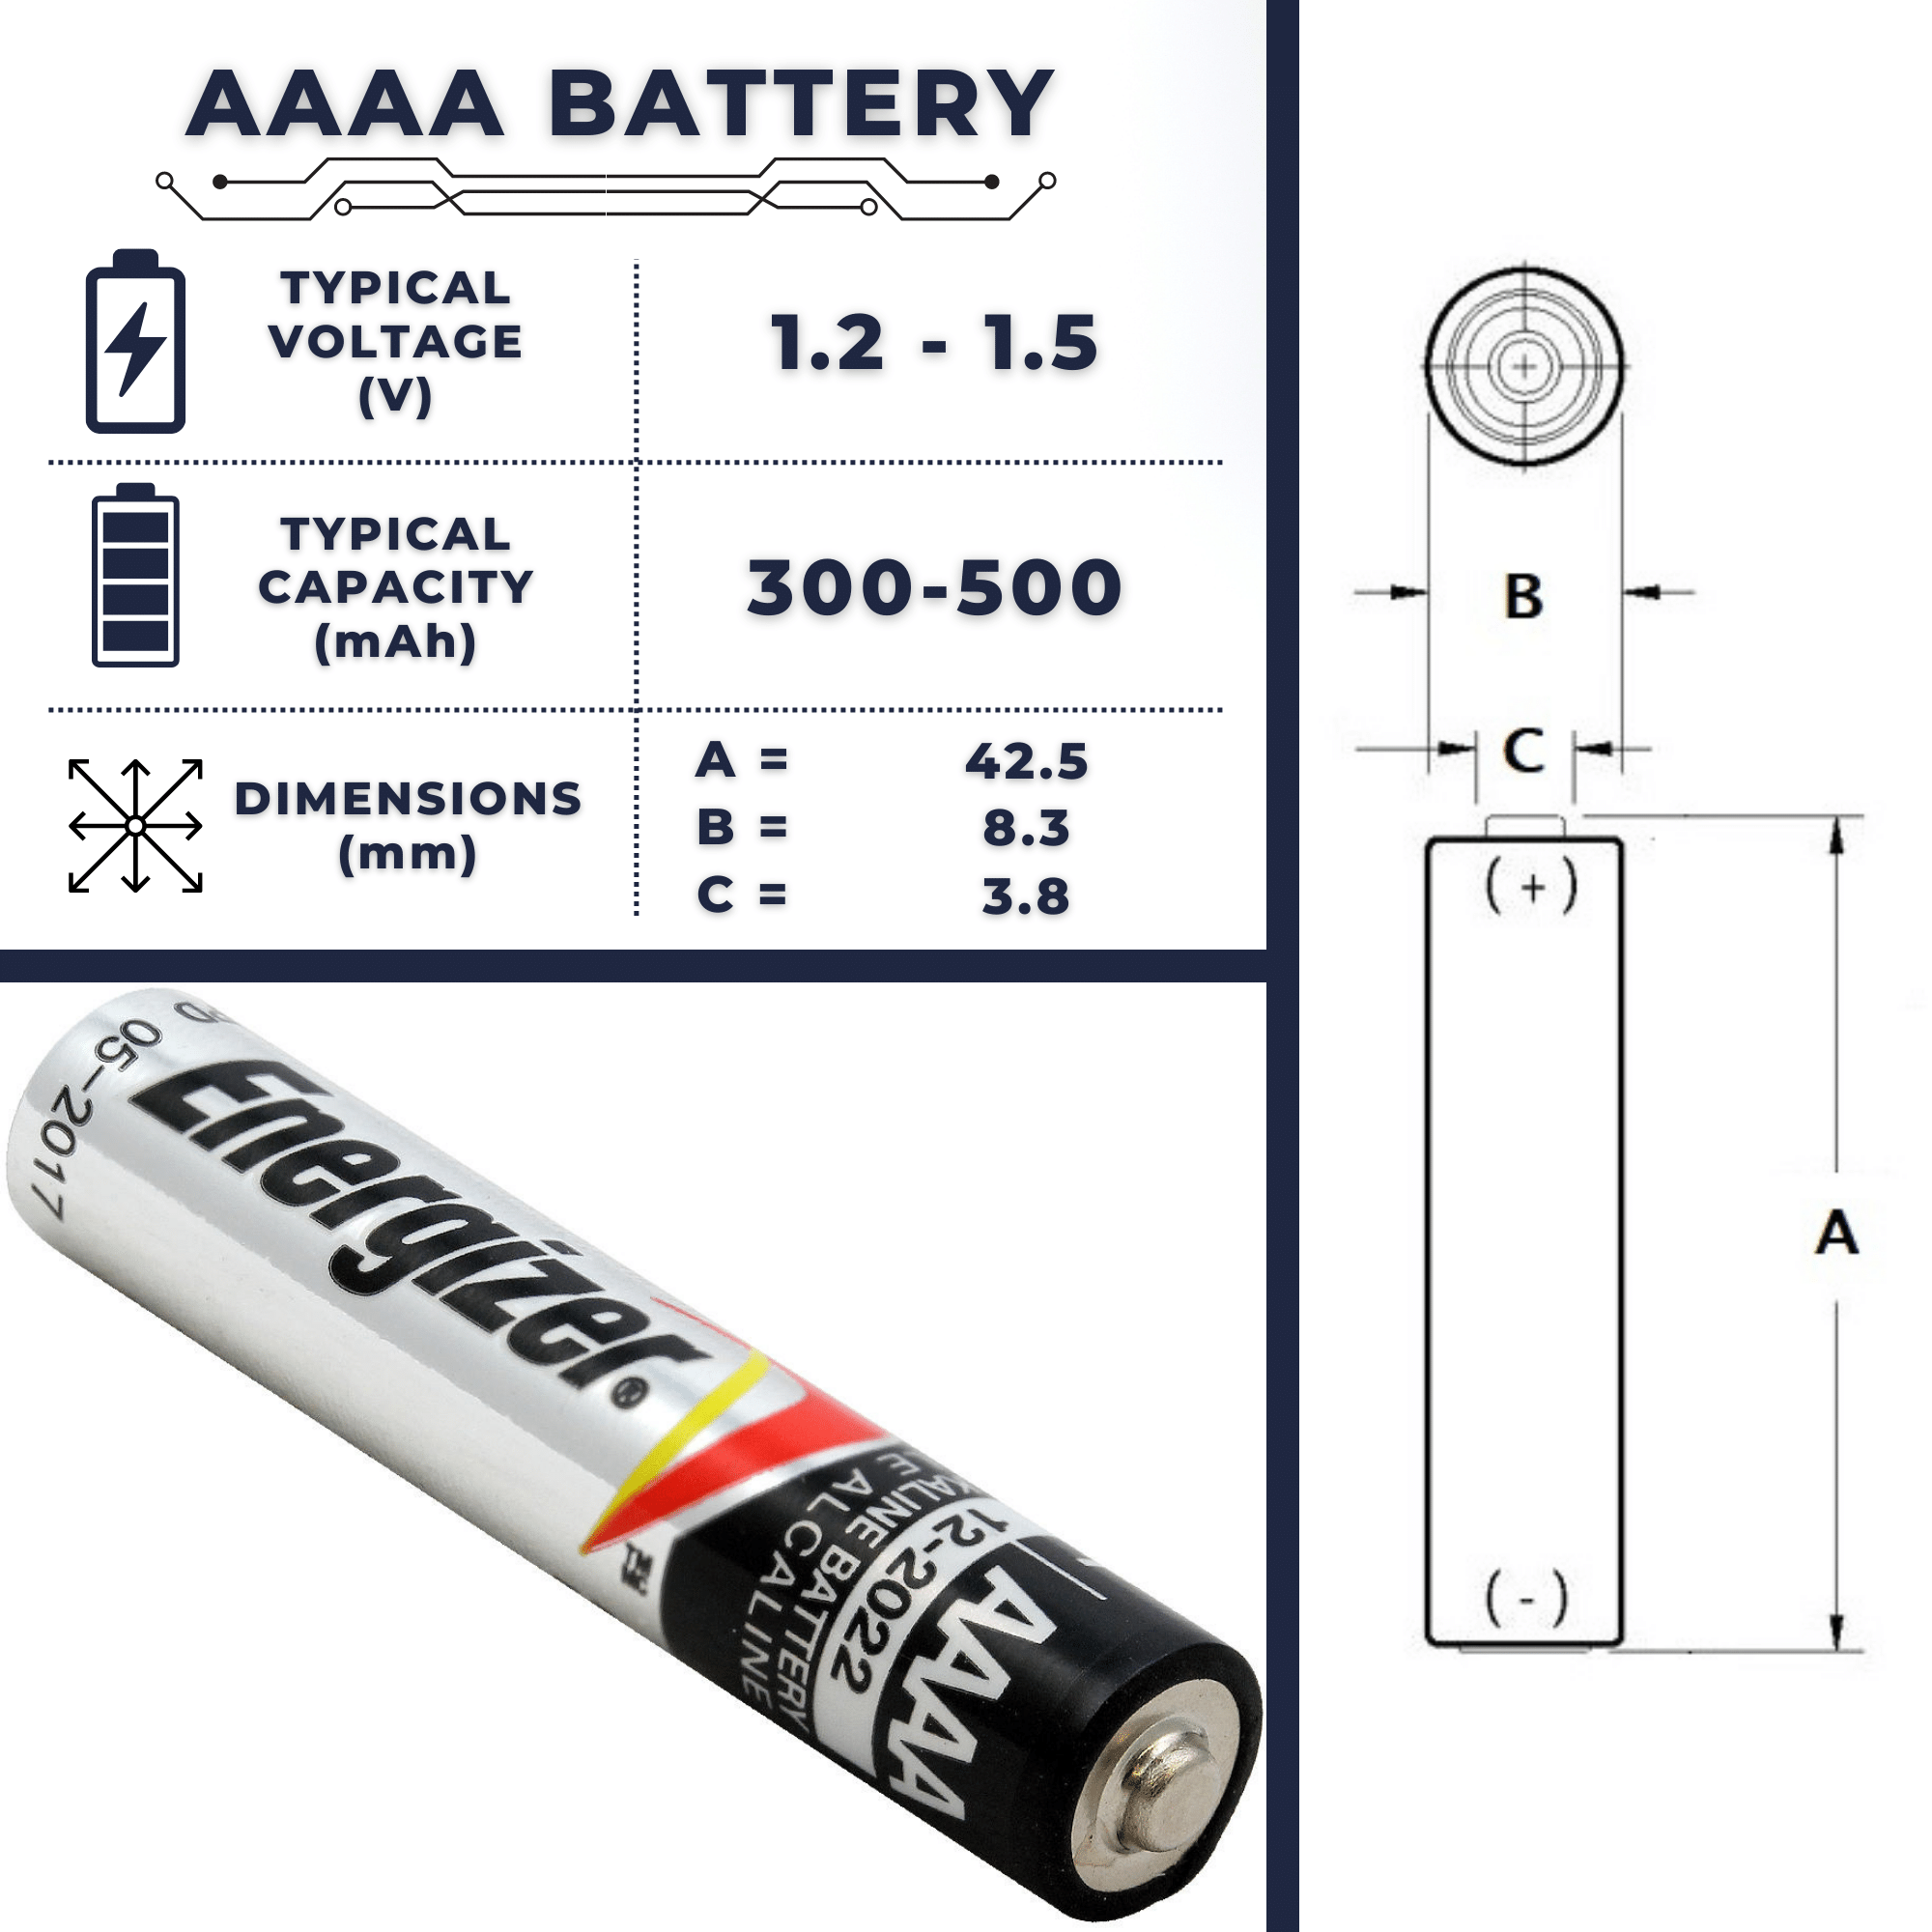 Characteristics of AAAA Batteries